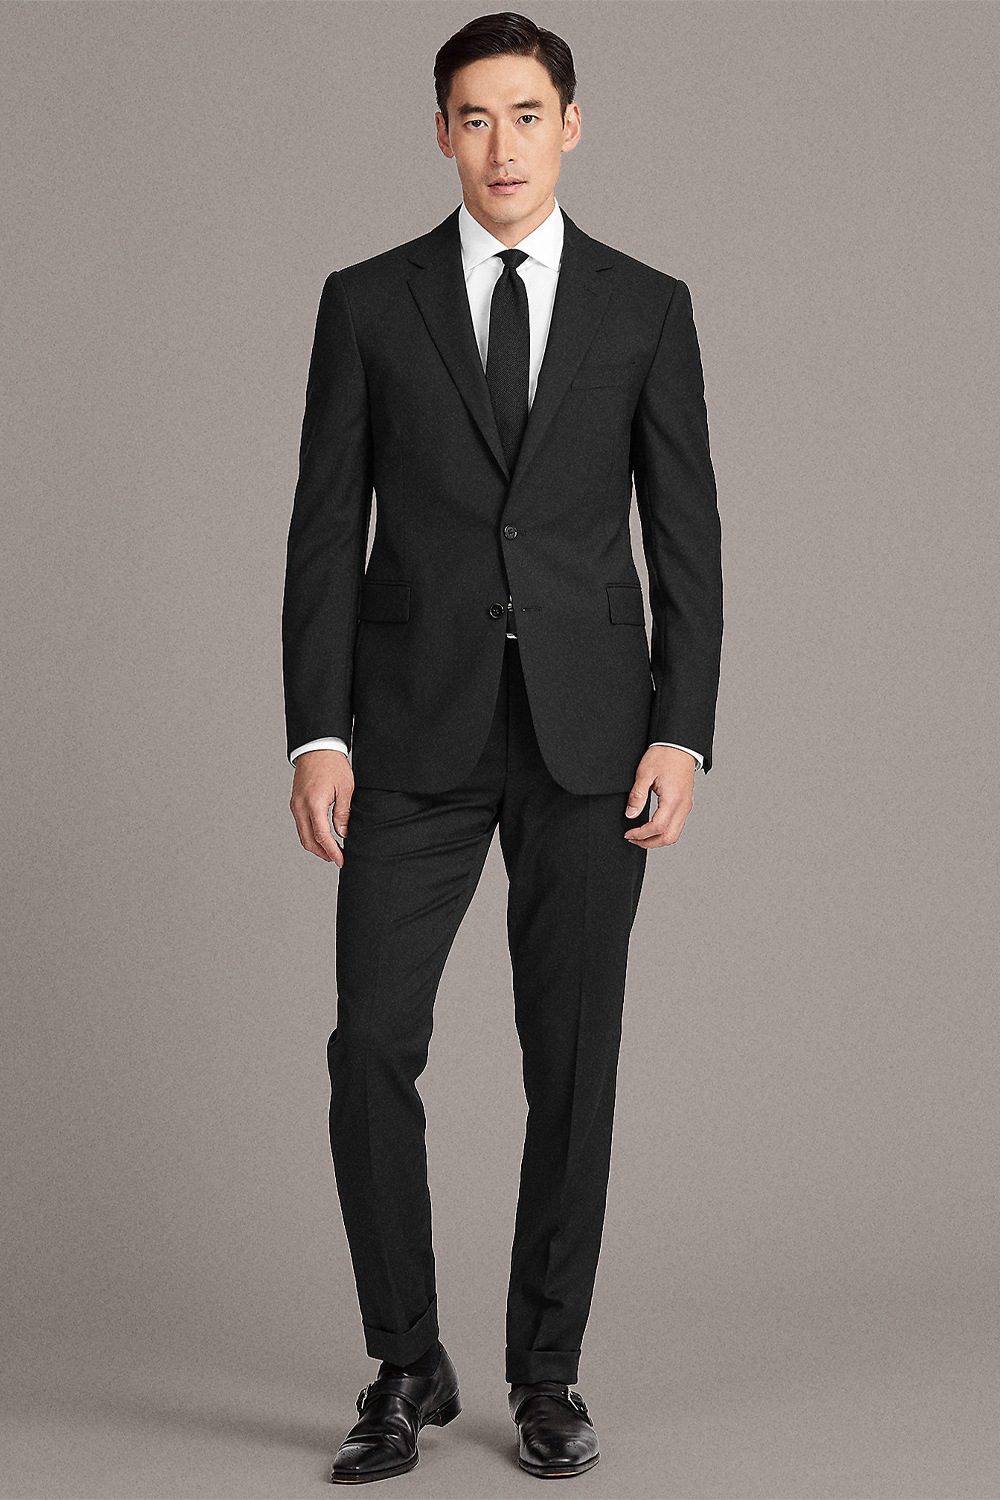 black shoes for black suit